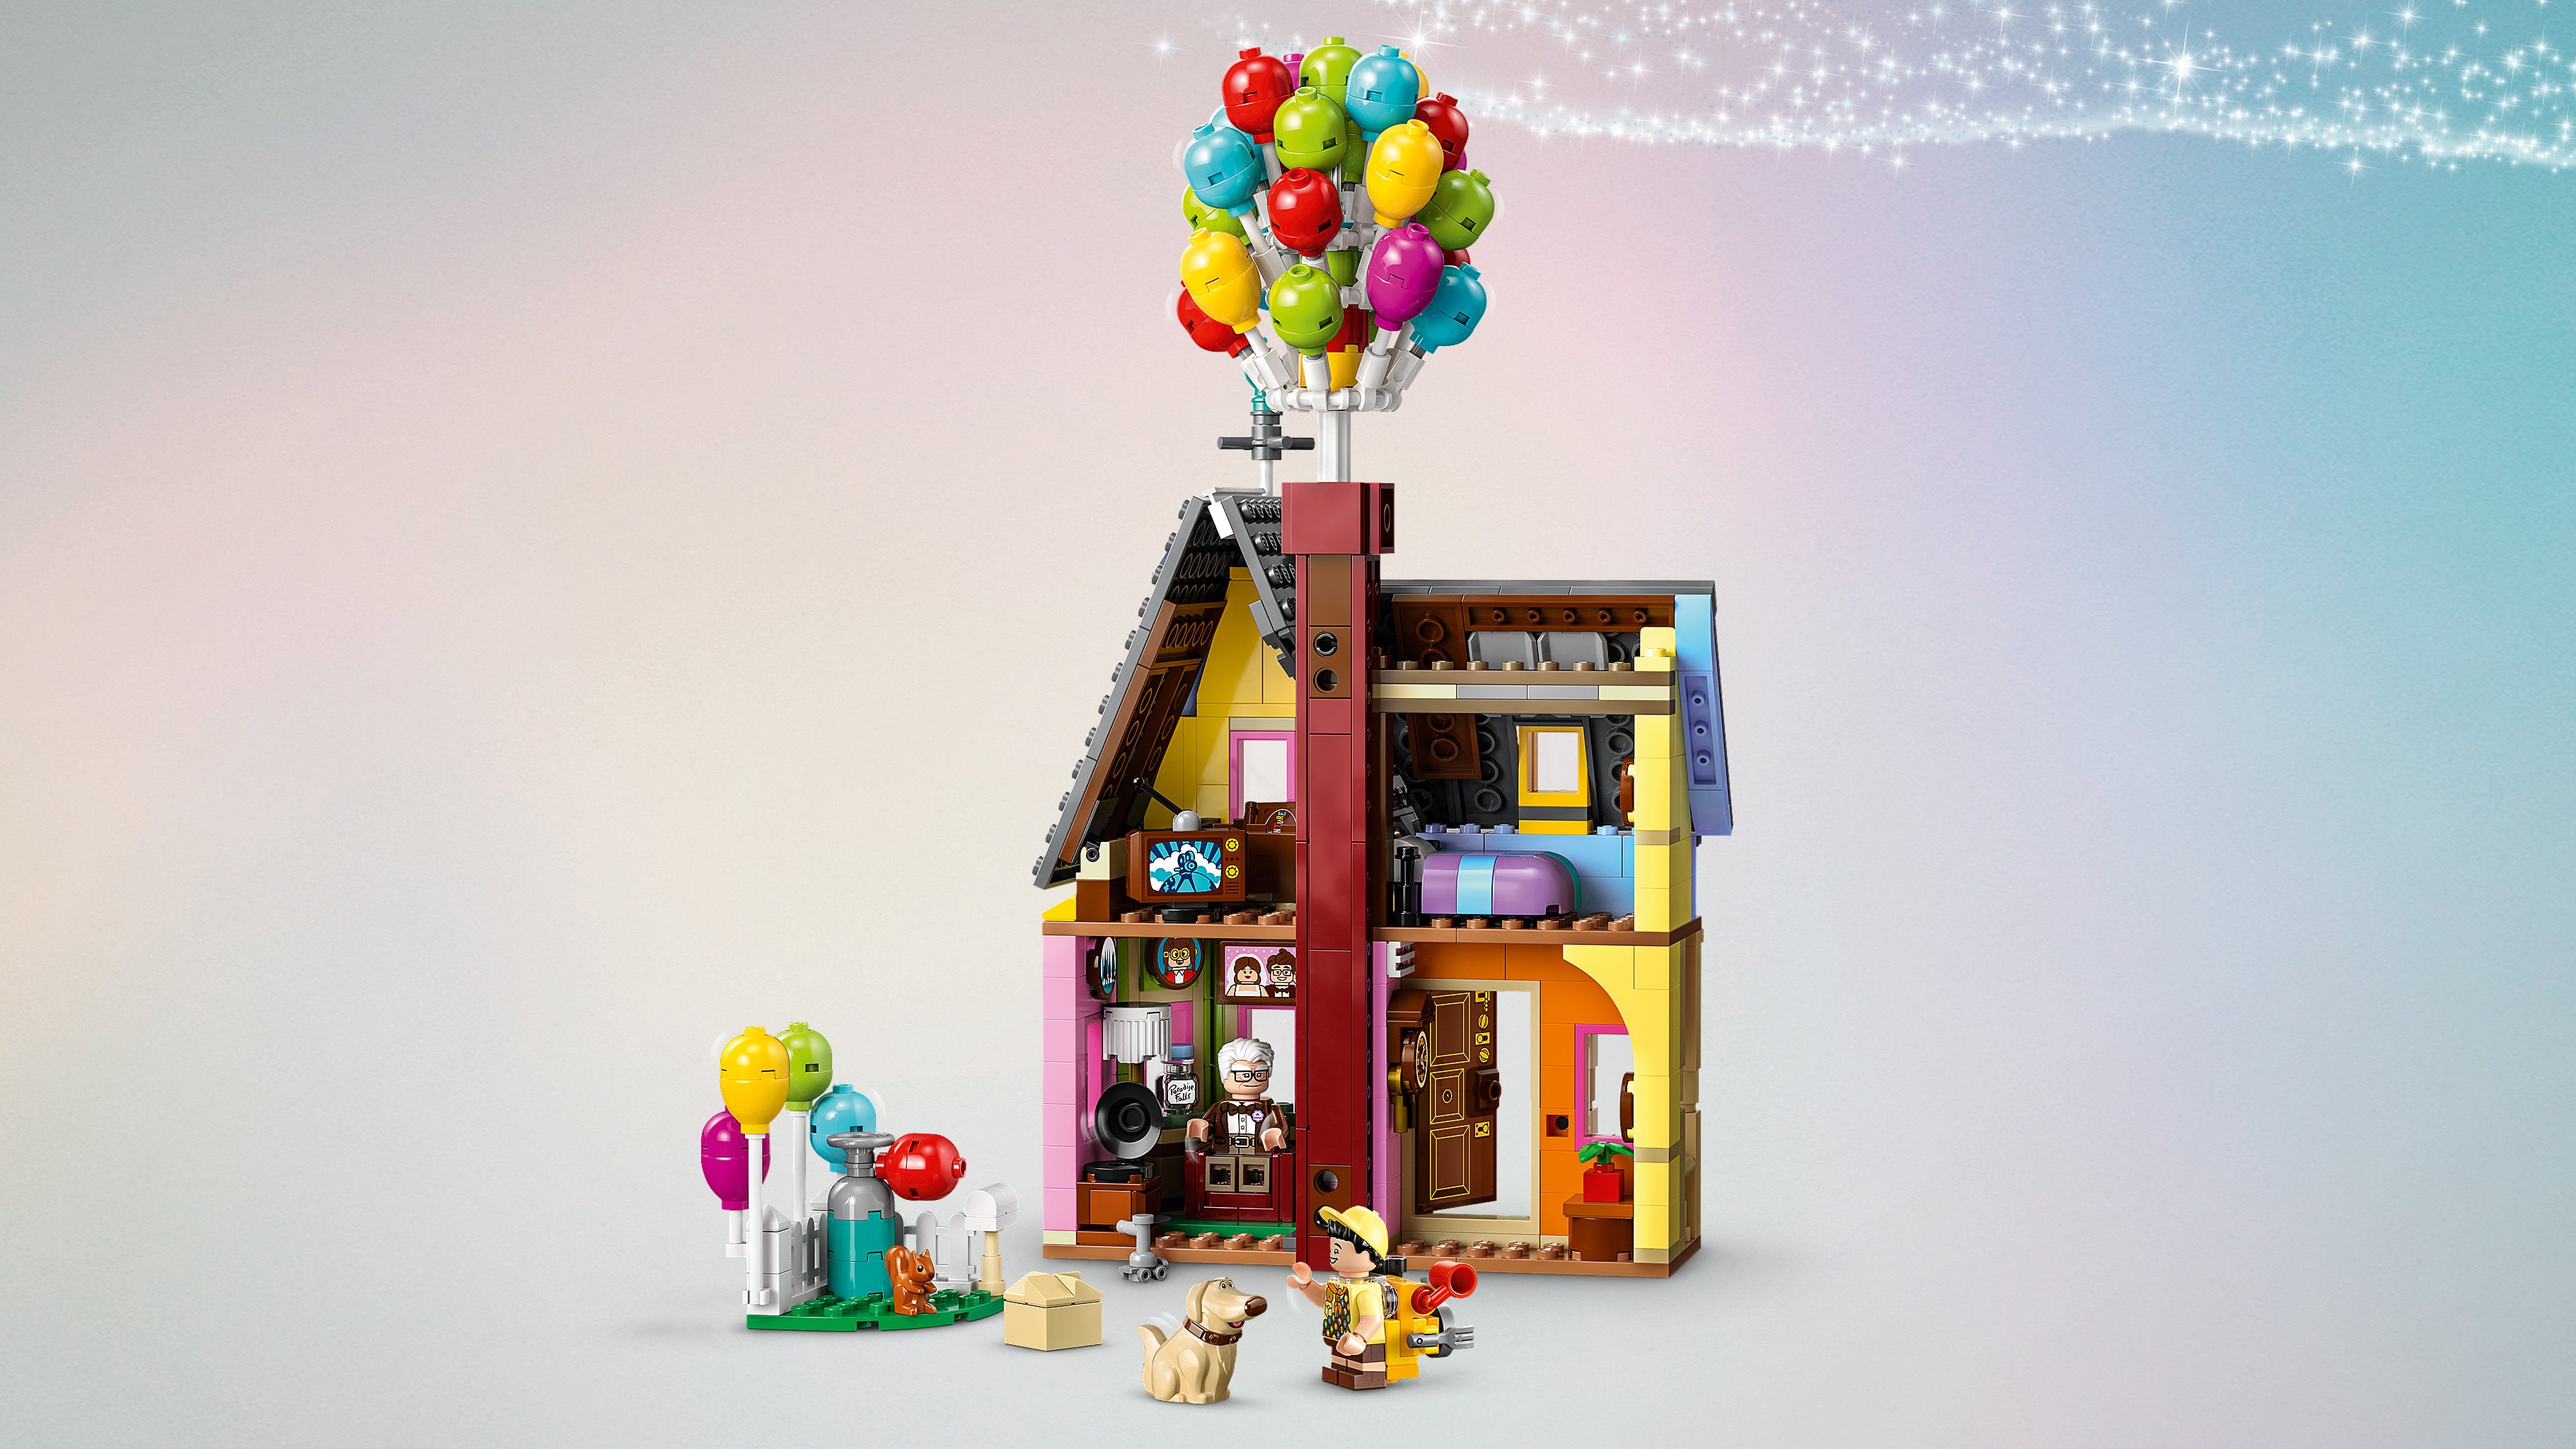 Lego 43217 Disney Up House